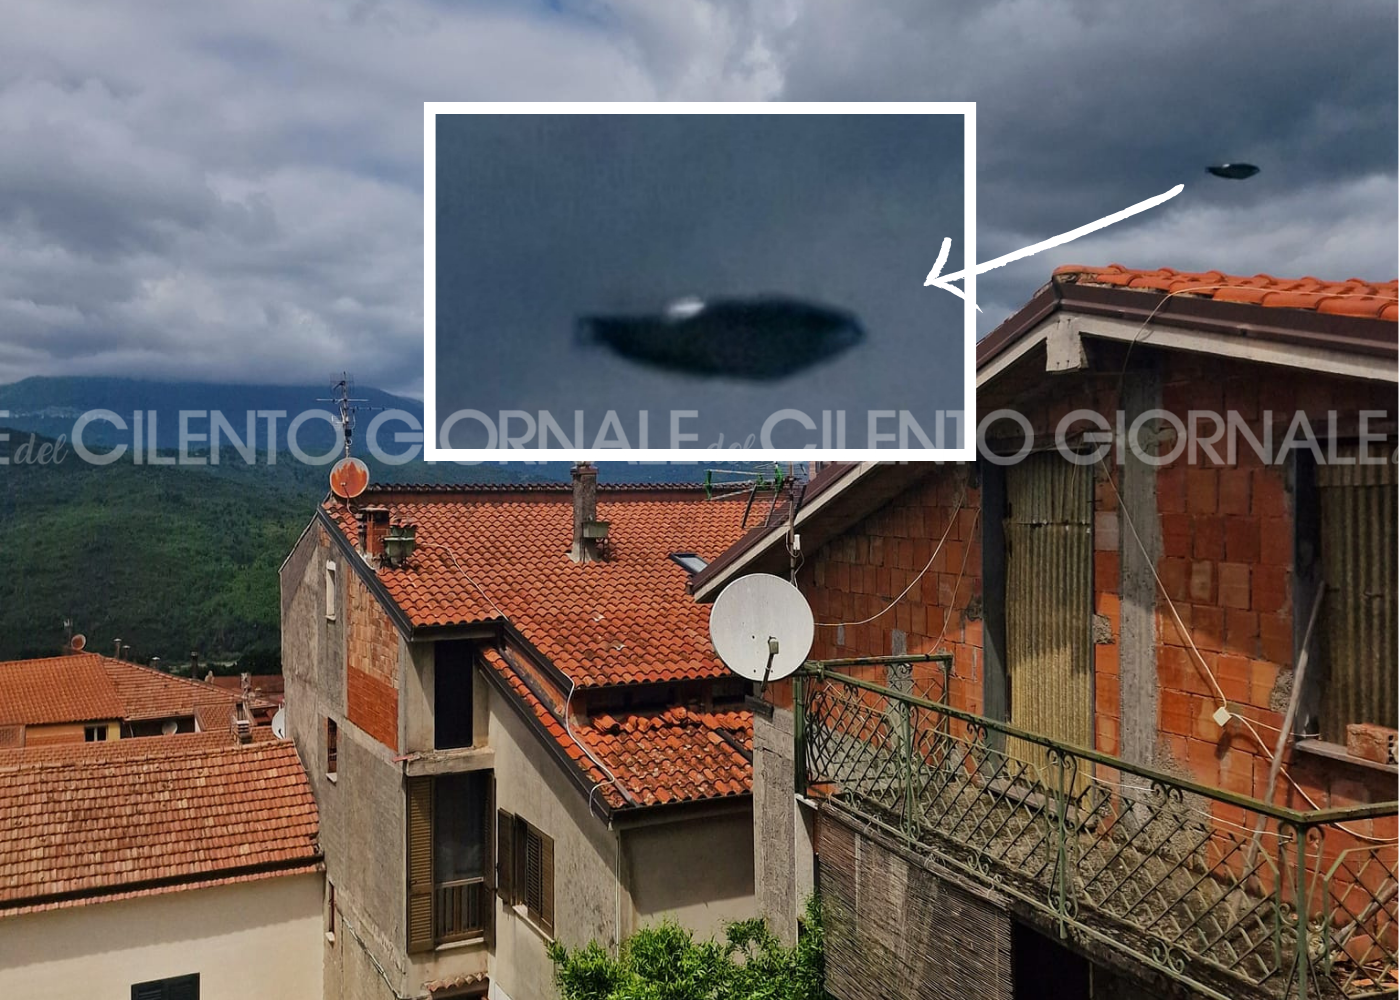 Oggetto non identificato nei cieli del Cilento: immagini inviate al centro ufologico Mediterraneo